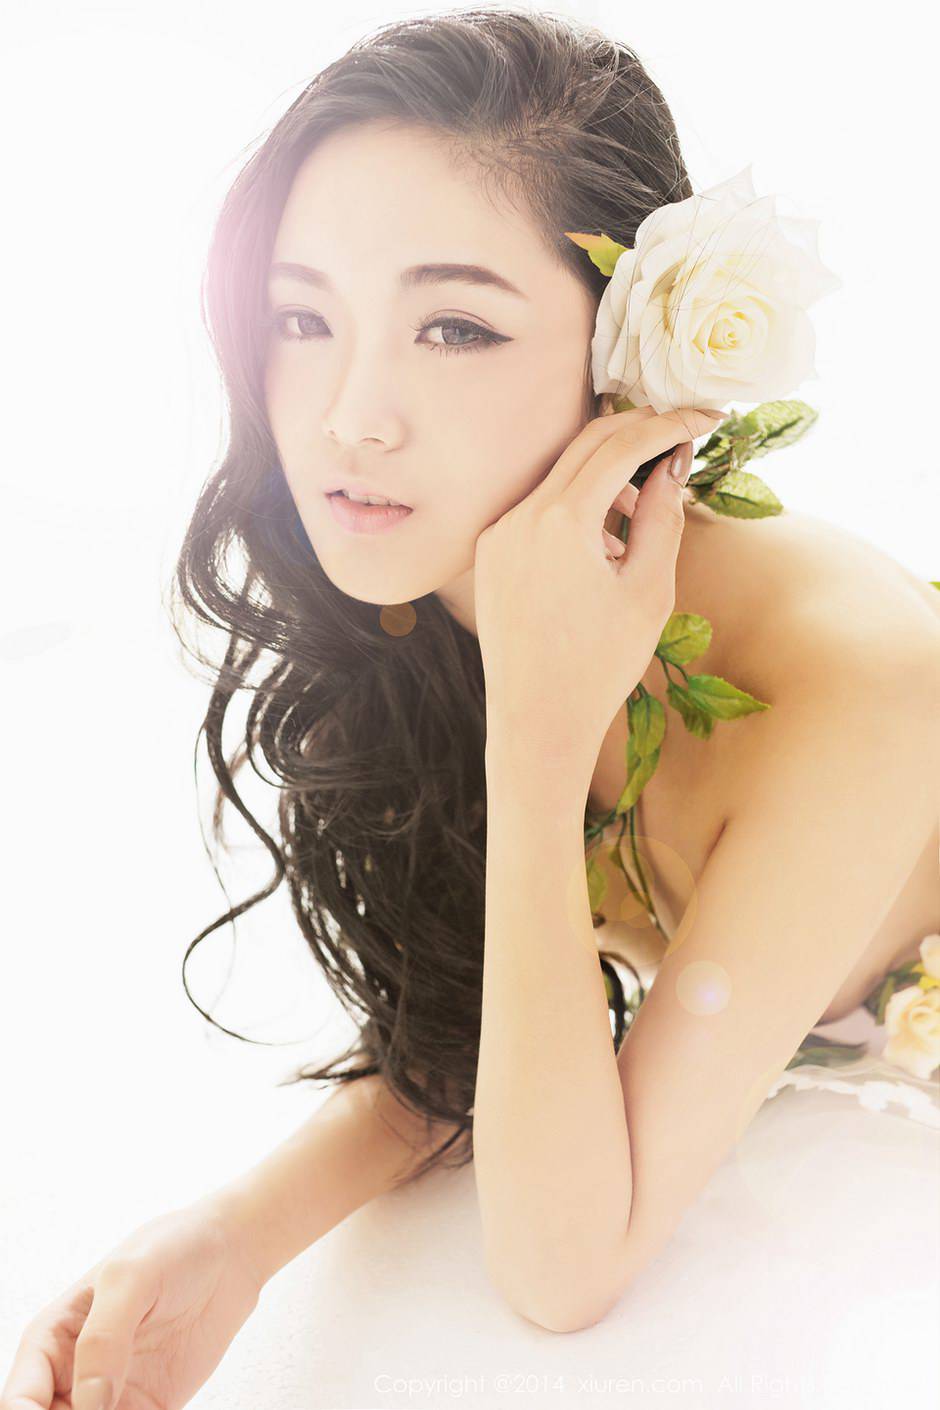 平面模特YOYO苏小苏唯美人体艺术写真